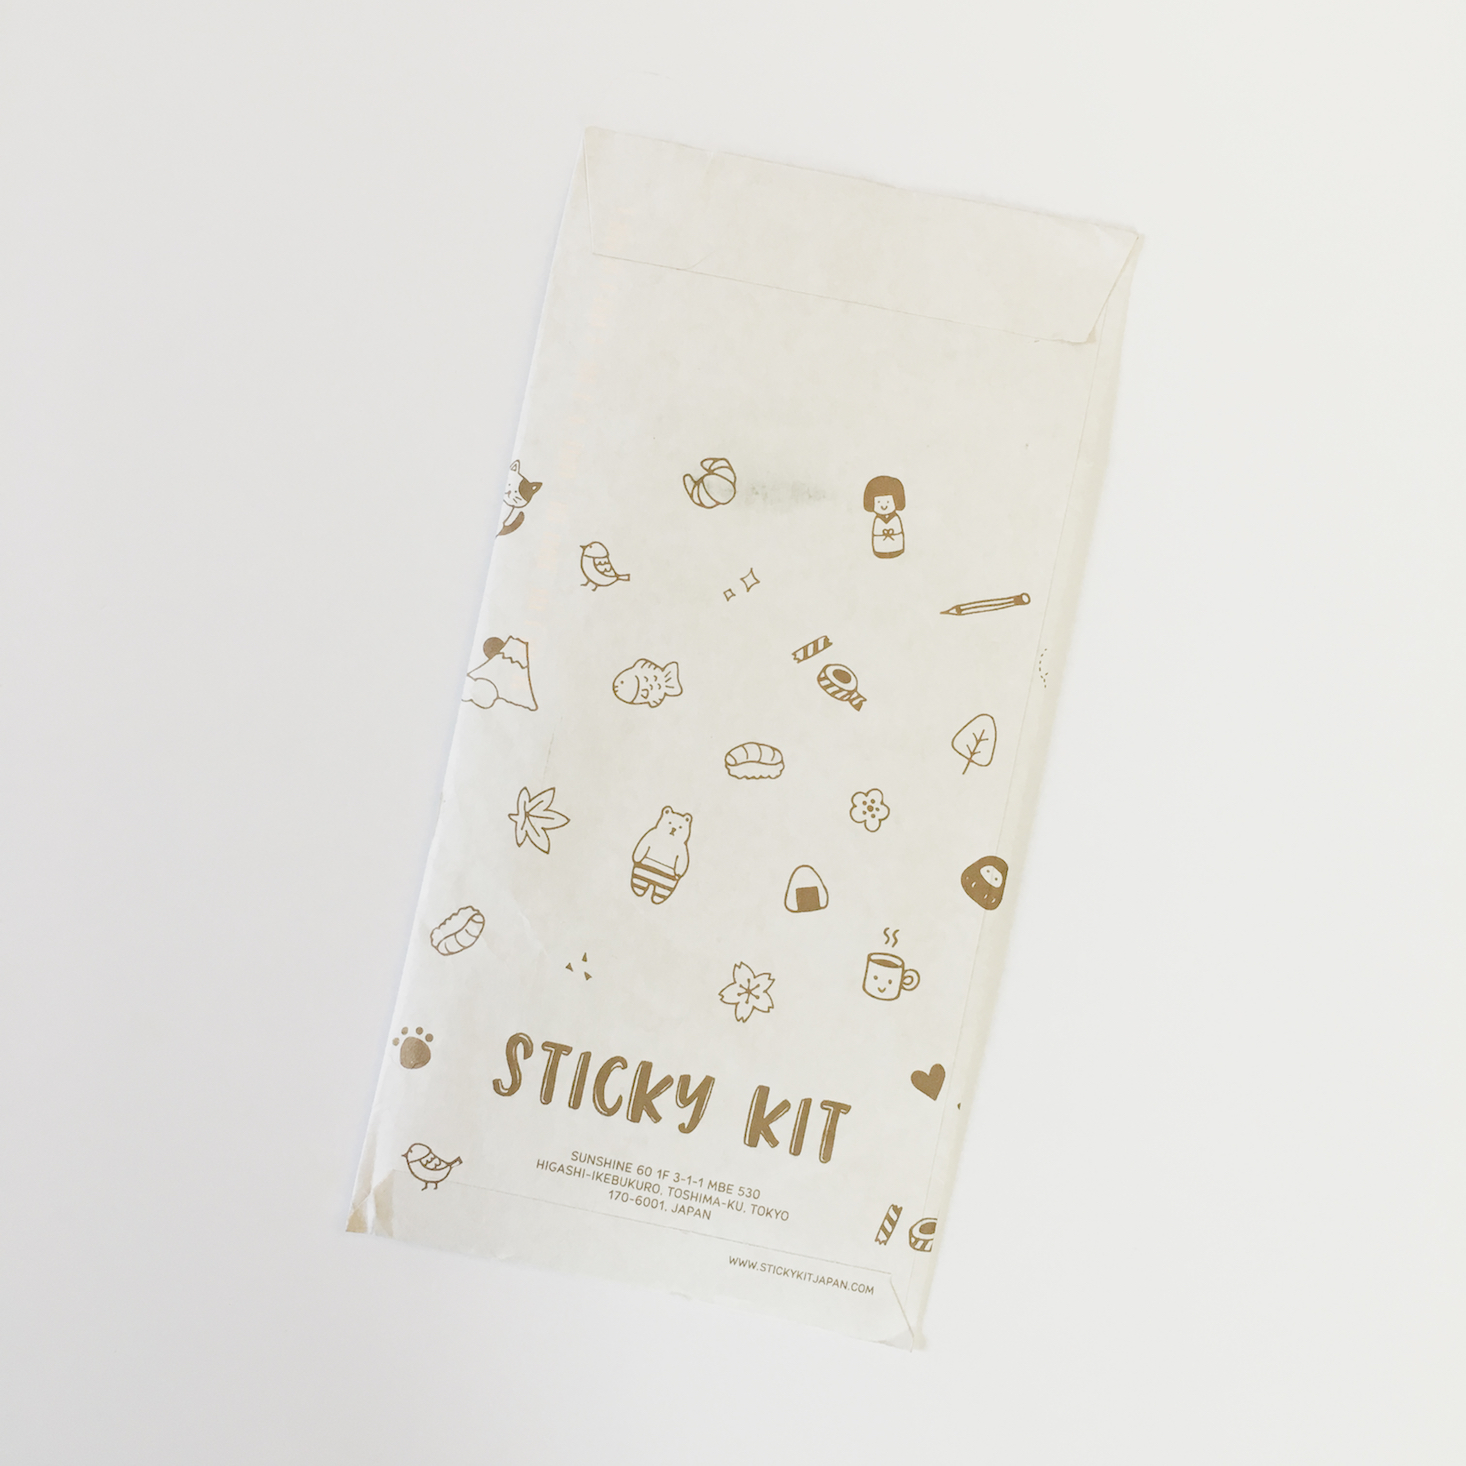 Sticky Kit November 2017